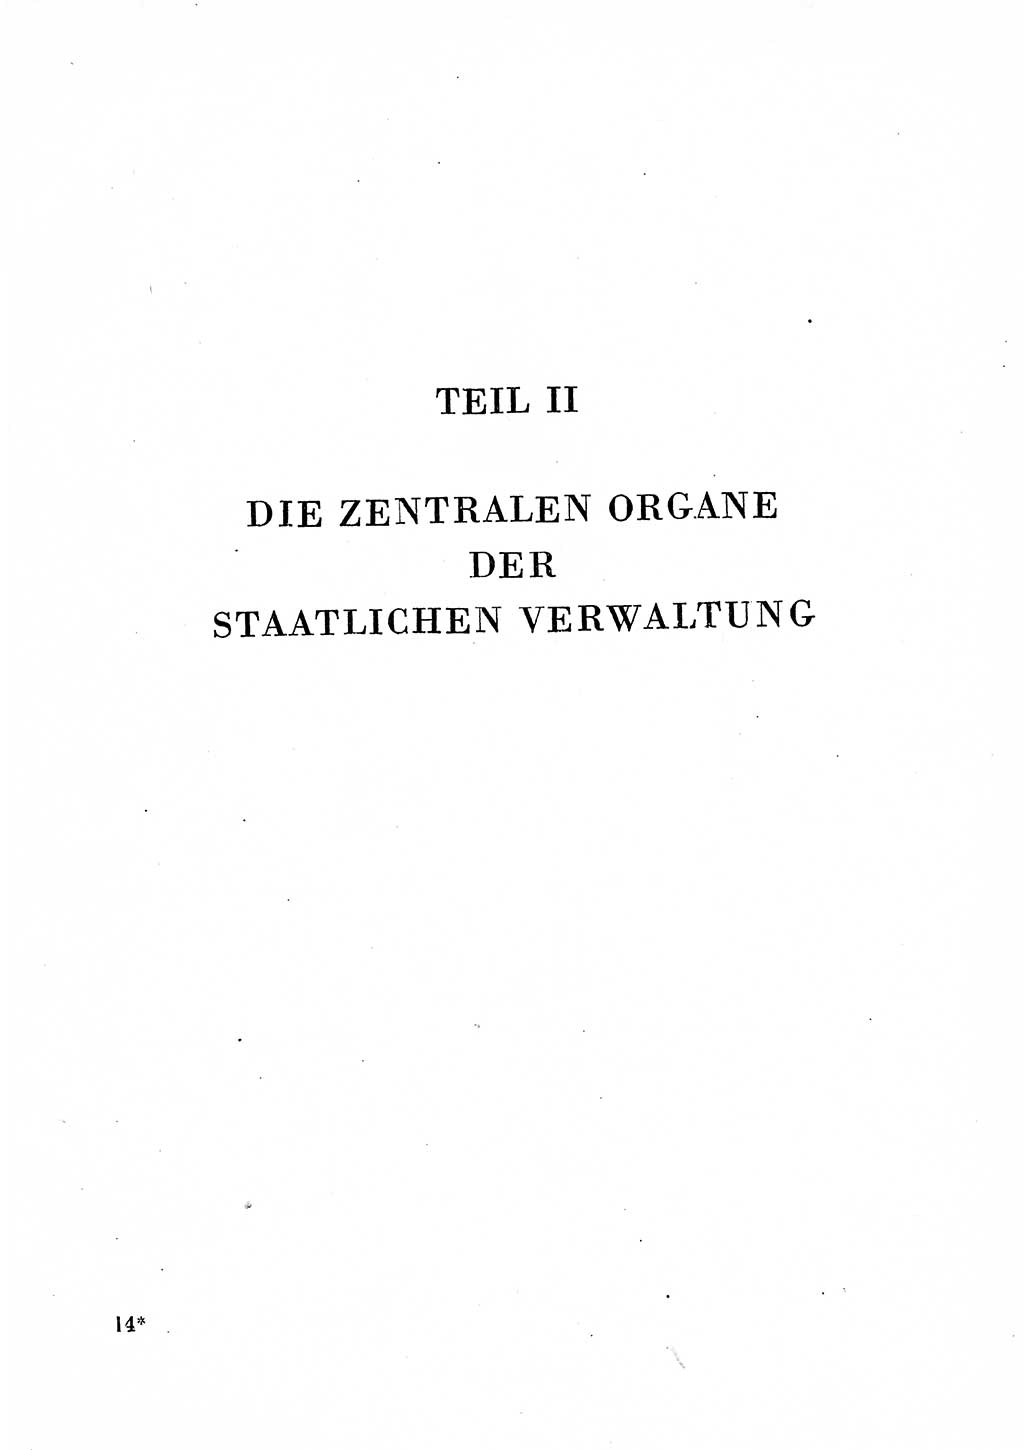 Staats- und verwaltungsrechtliche Gesetze der Deutschen Demokratischen Republik (DDR) 1958, Seite 211 (StVerwR Ges. DDR 1958, S. 211)